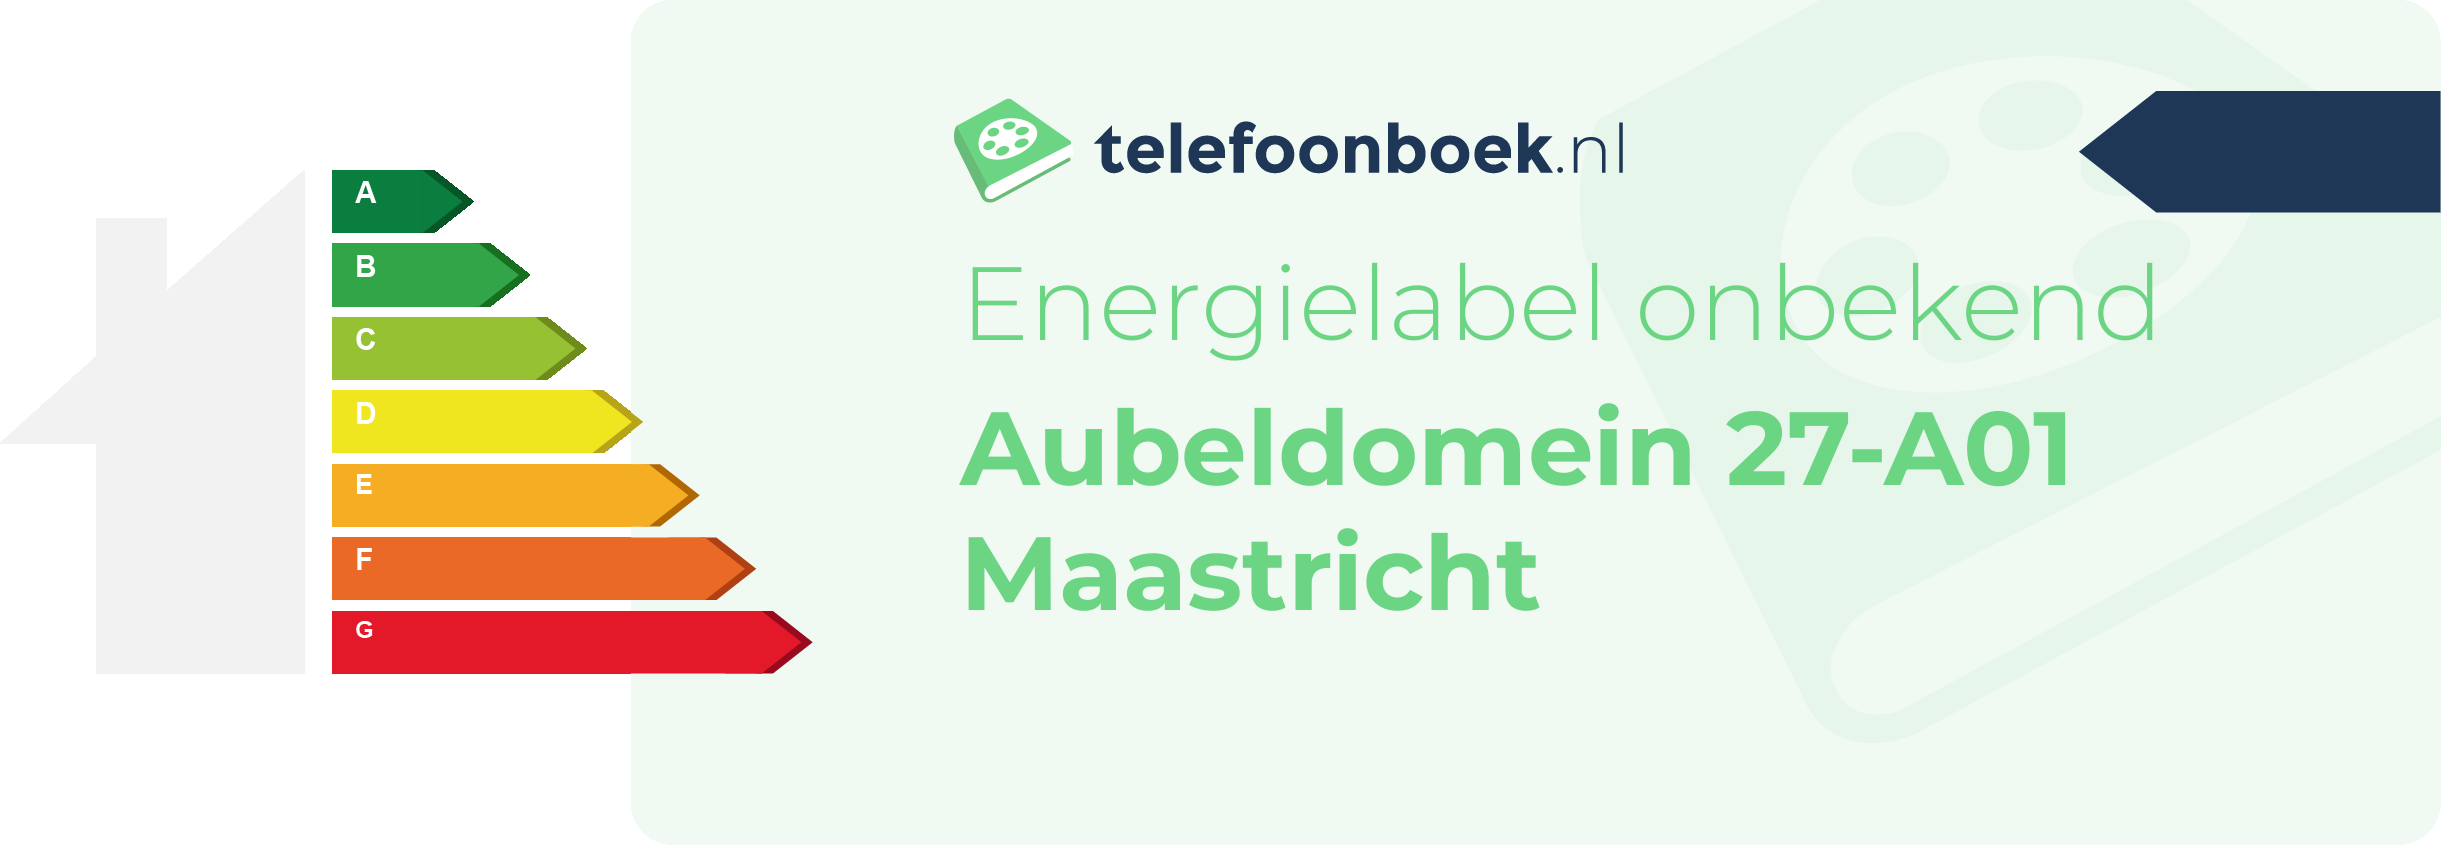 Energielabel Aubeldomein 27-A01 Maastricht